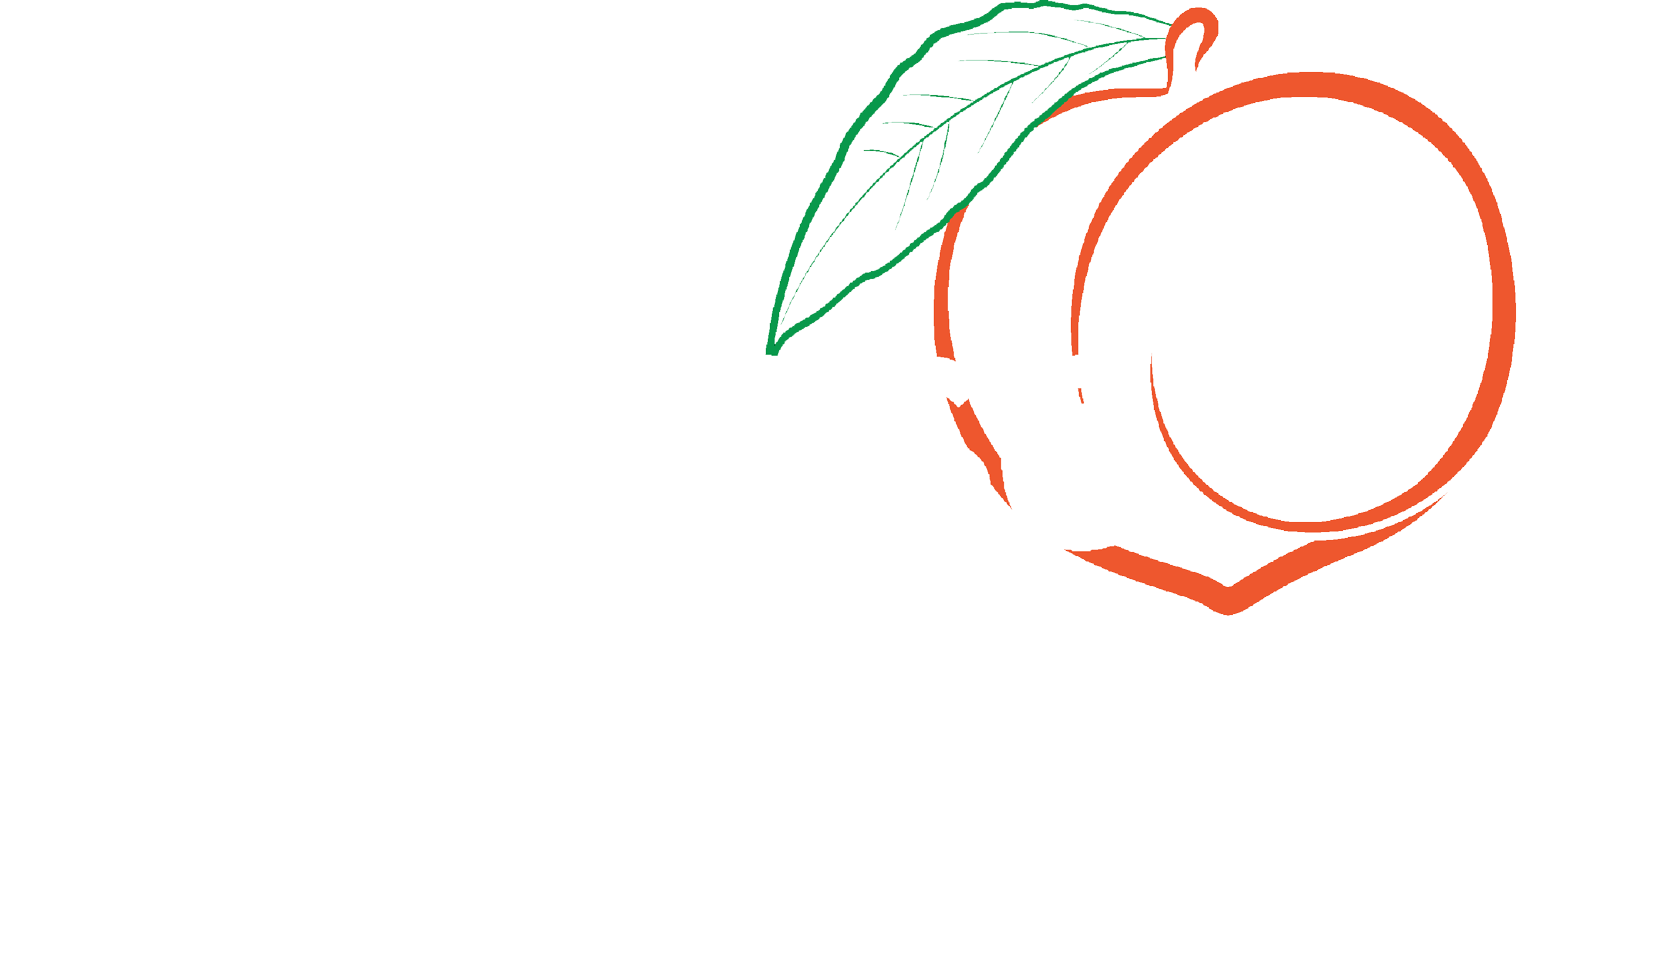 Increase the Peach™